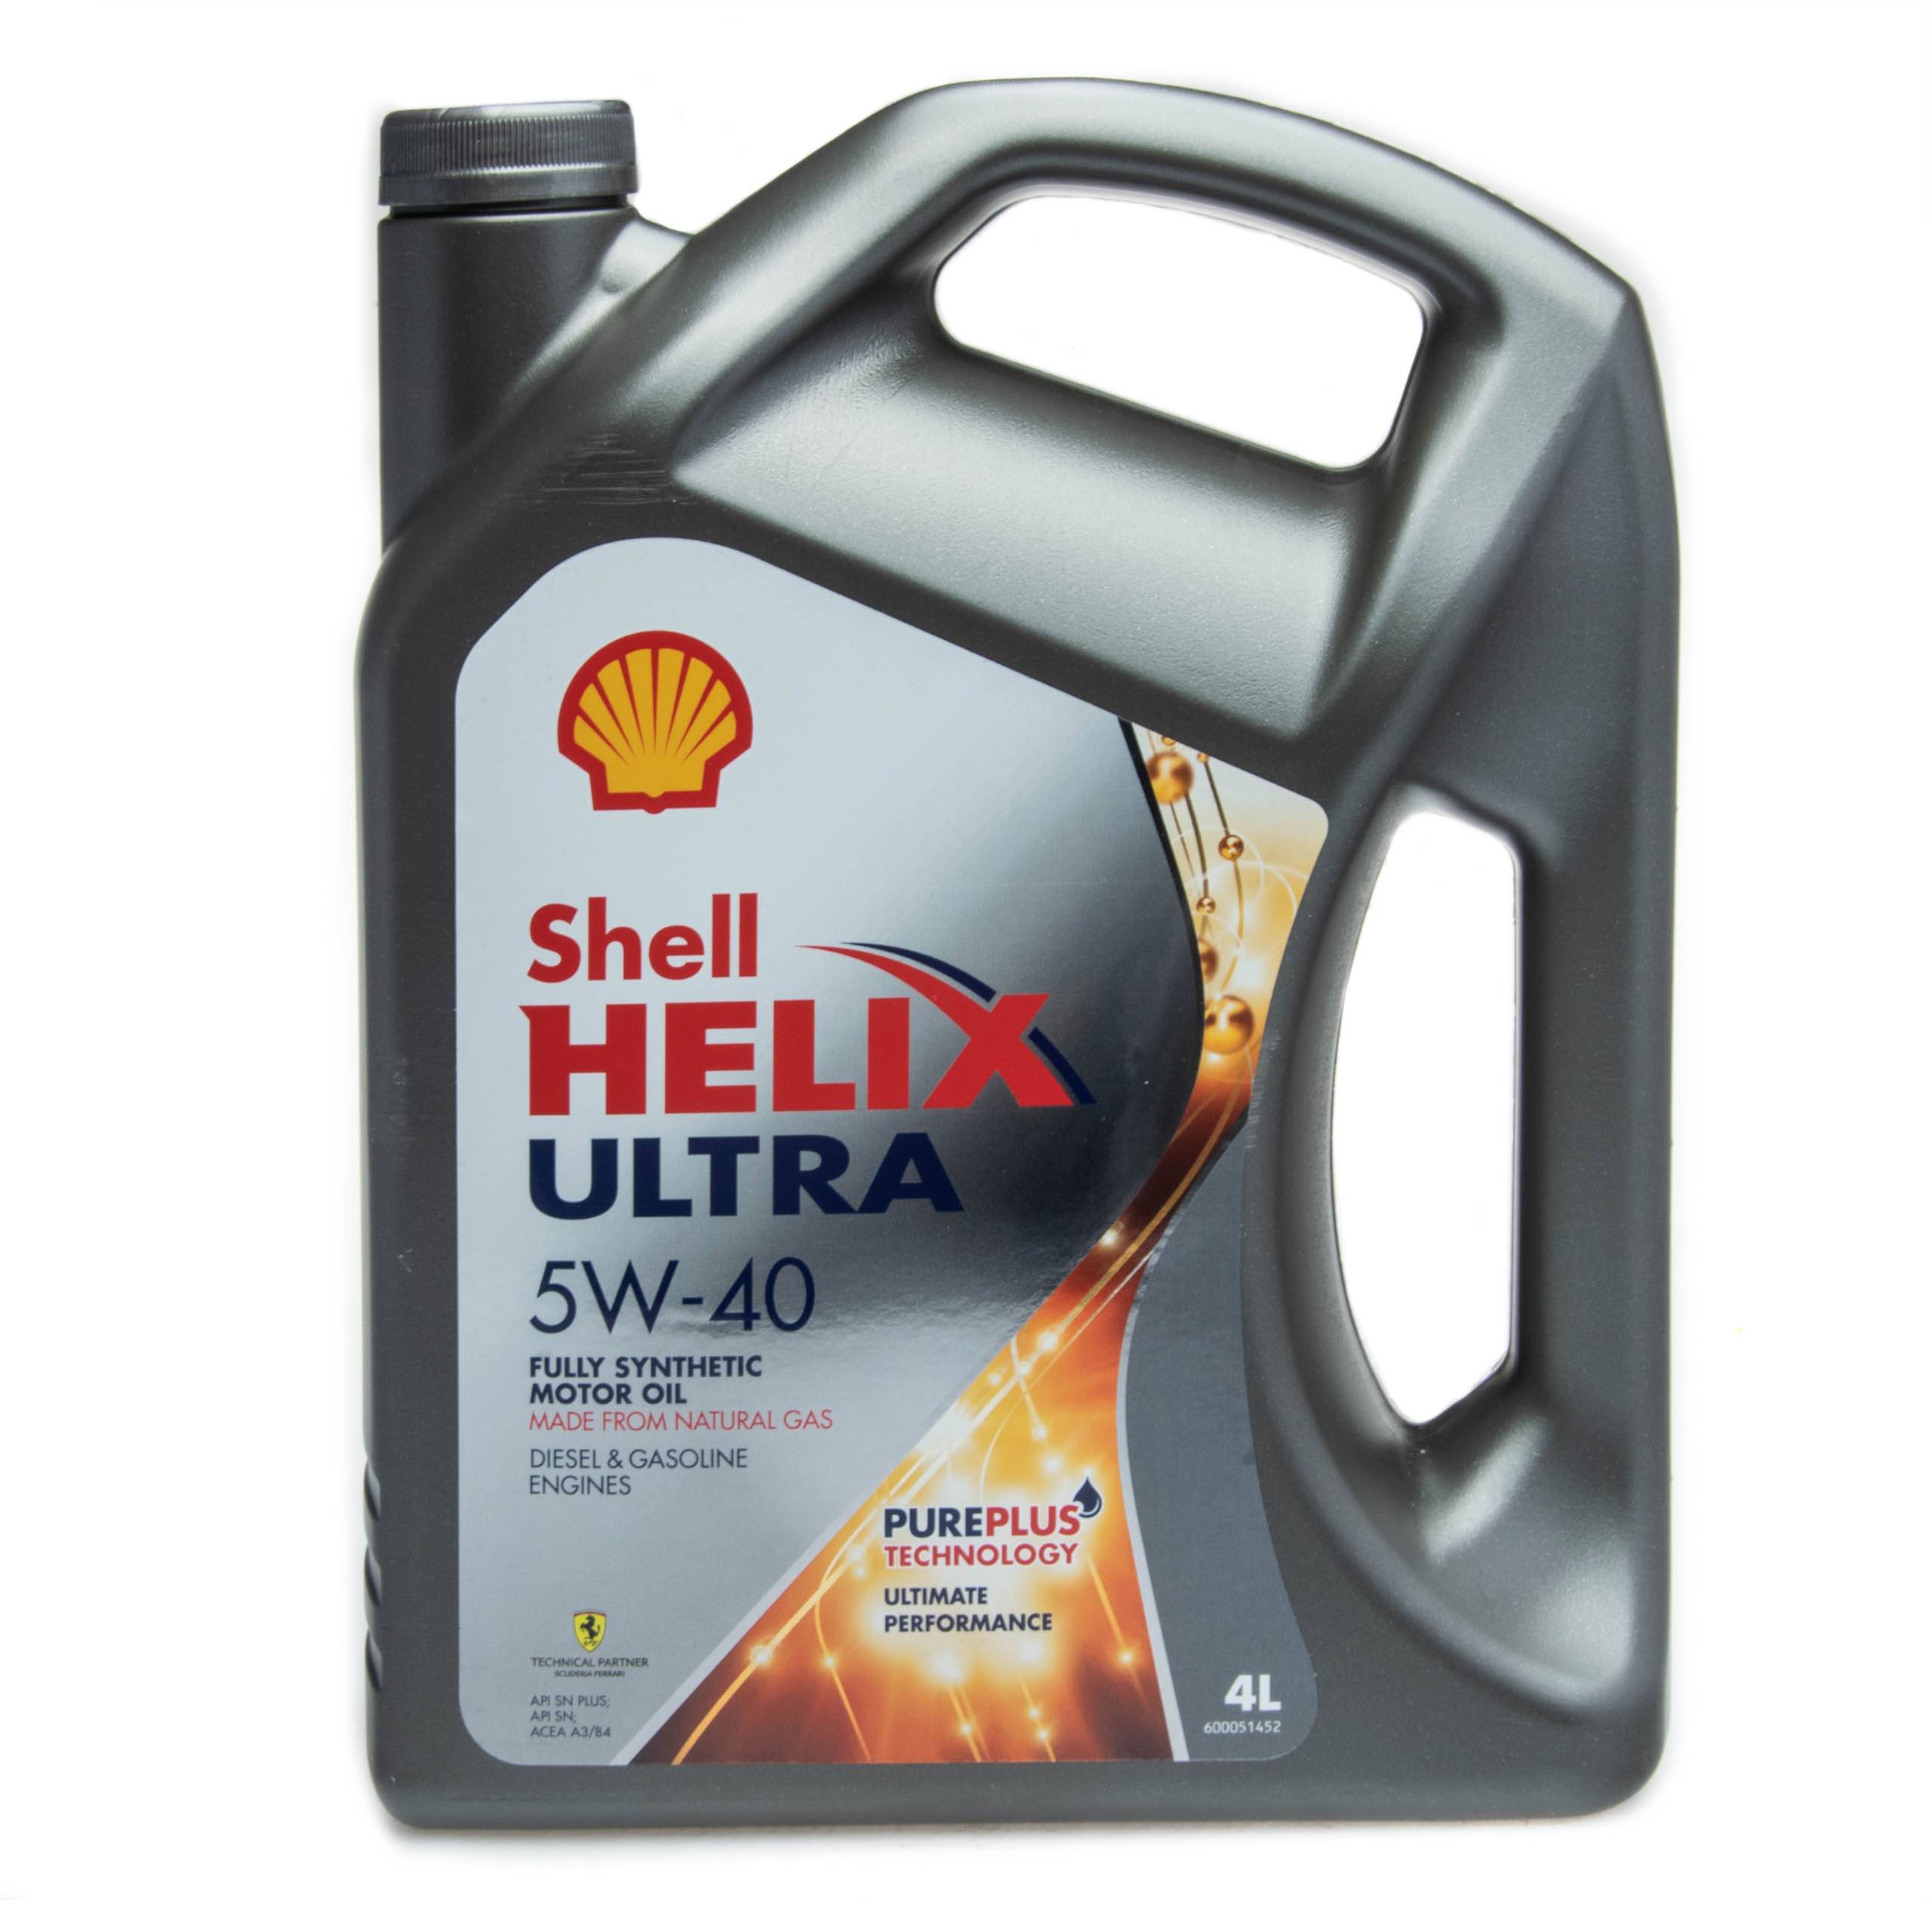 Shell helix ultra 5w40: синтетика или полусинтетика?